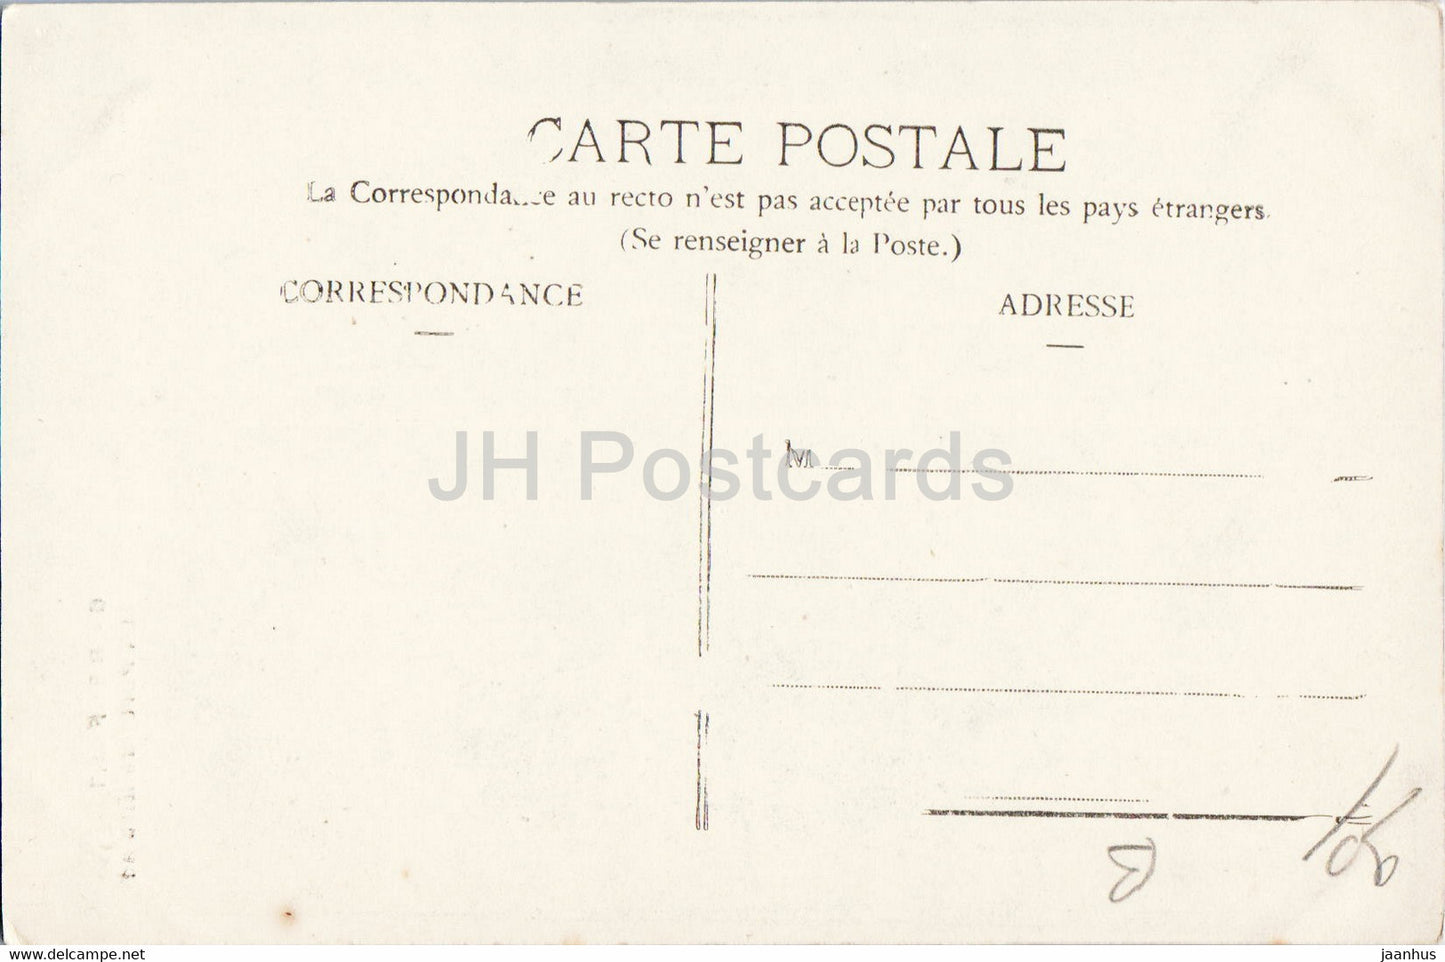 Belfort - La Porte de Briasch - 6 - alte Postkarte - Frankreich - unbenutzt